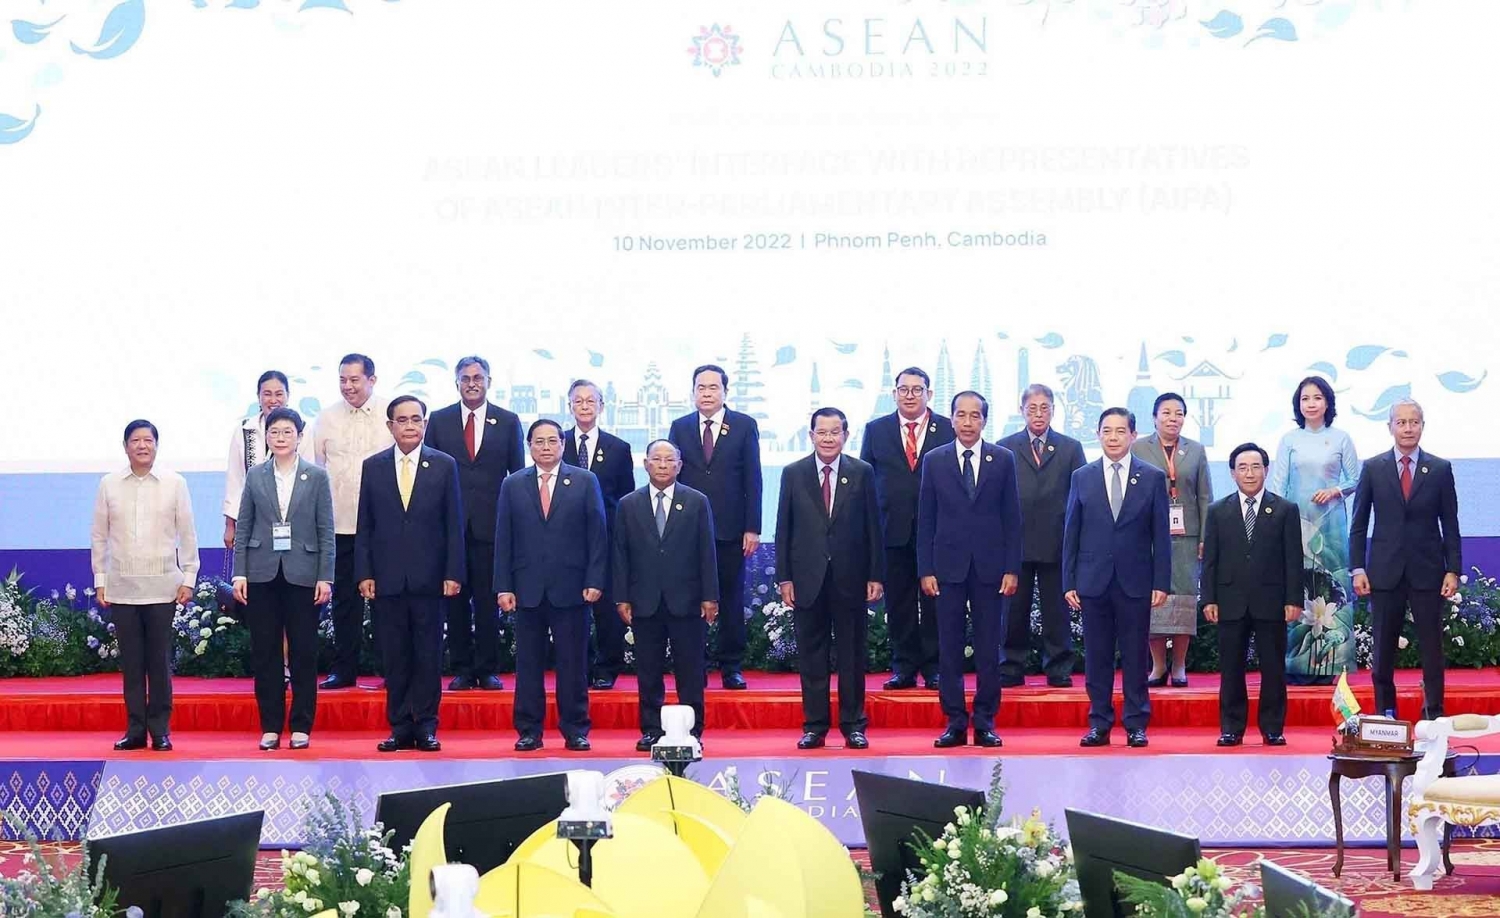 Thủ tướng Phạm Minh Chính và các nhà lãnh đạo ASEAN với đại diện Đại hội đồng Liên nghị viện ASEAN chụp ảnh chung. (Nguồn: TTXVN)